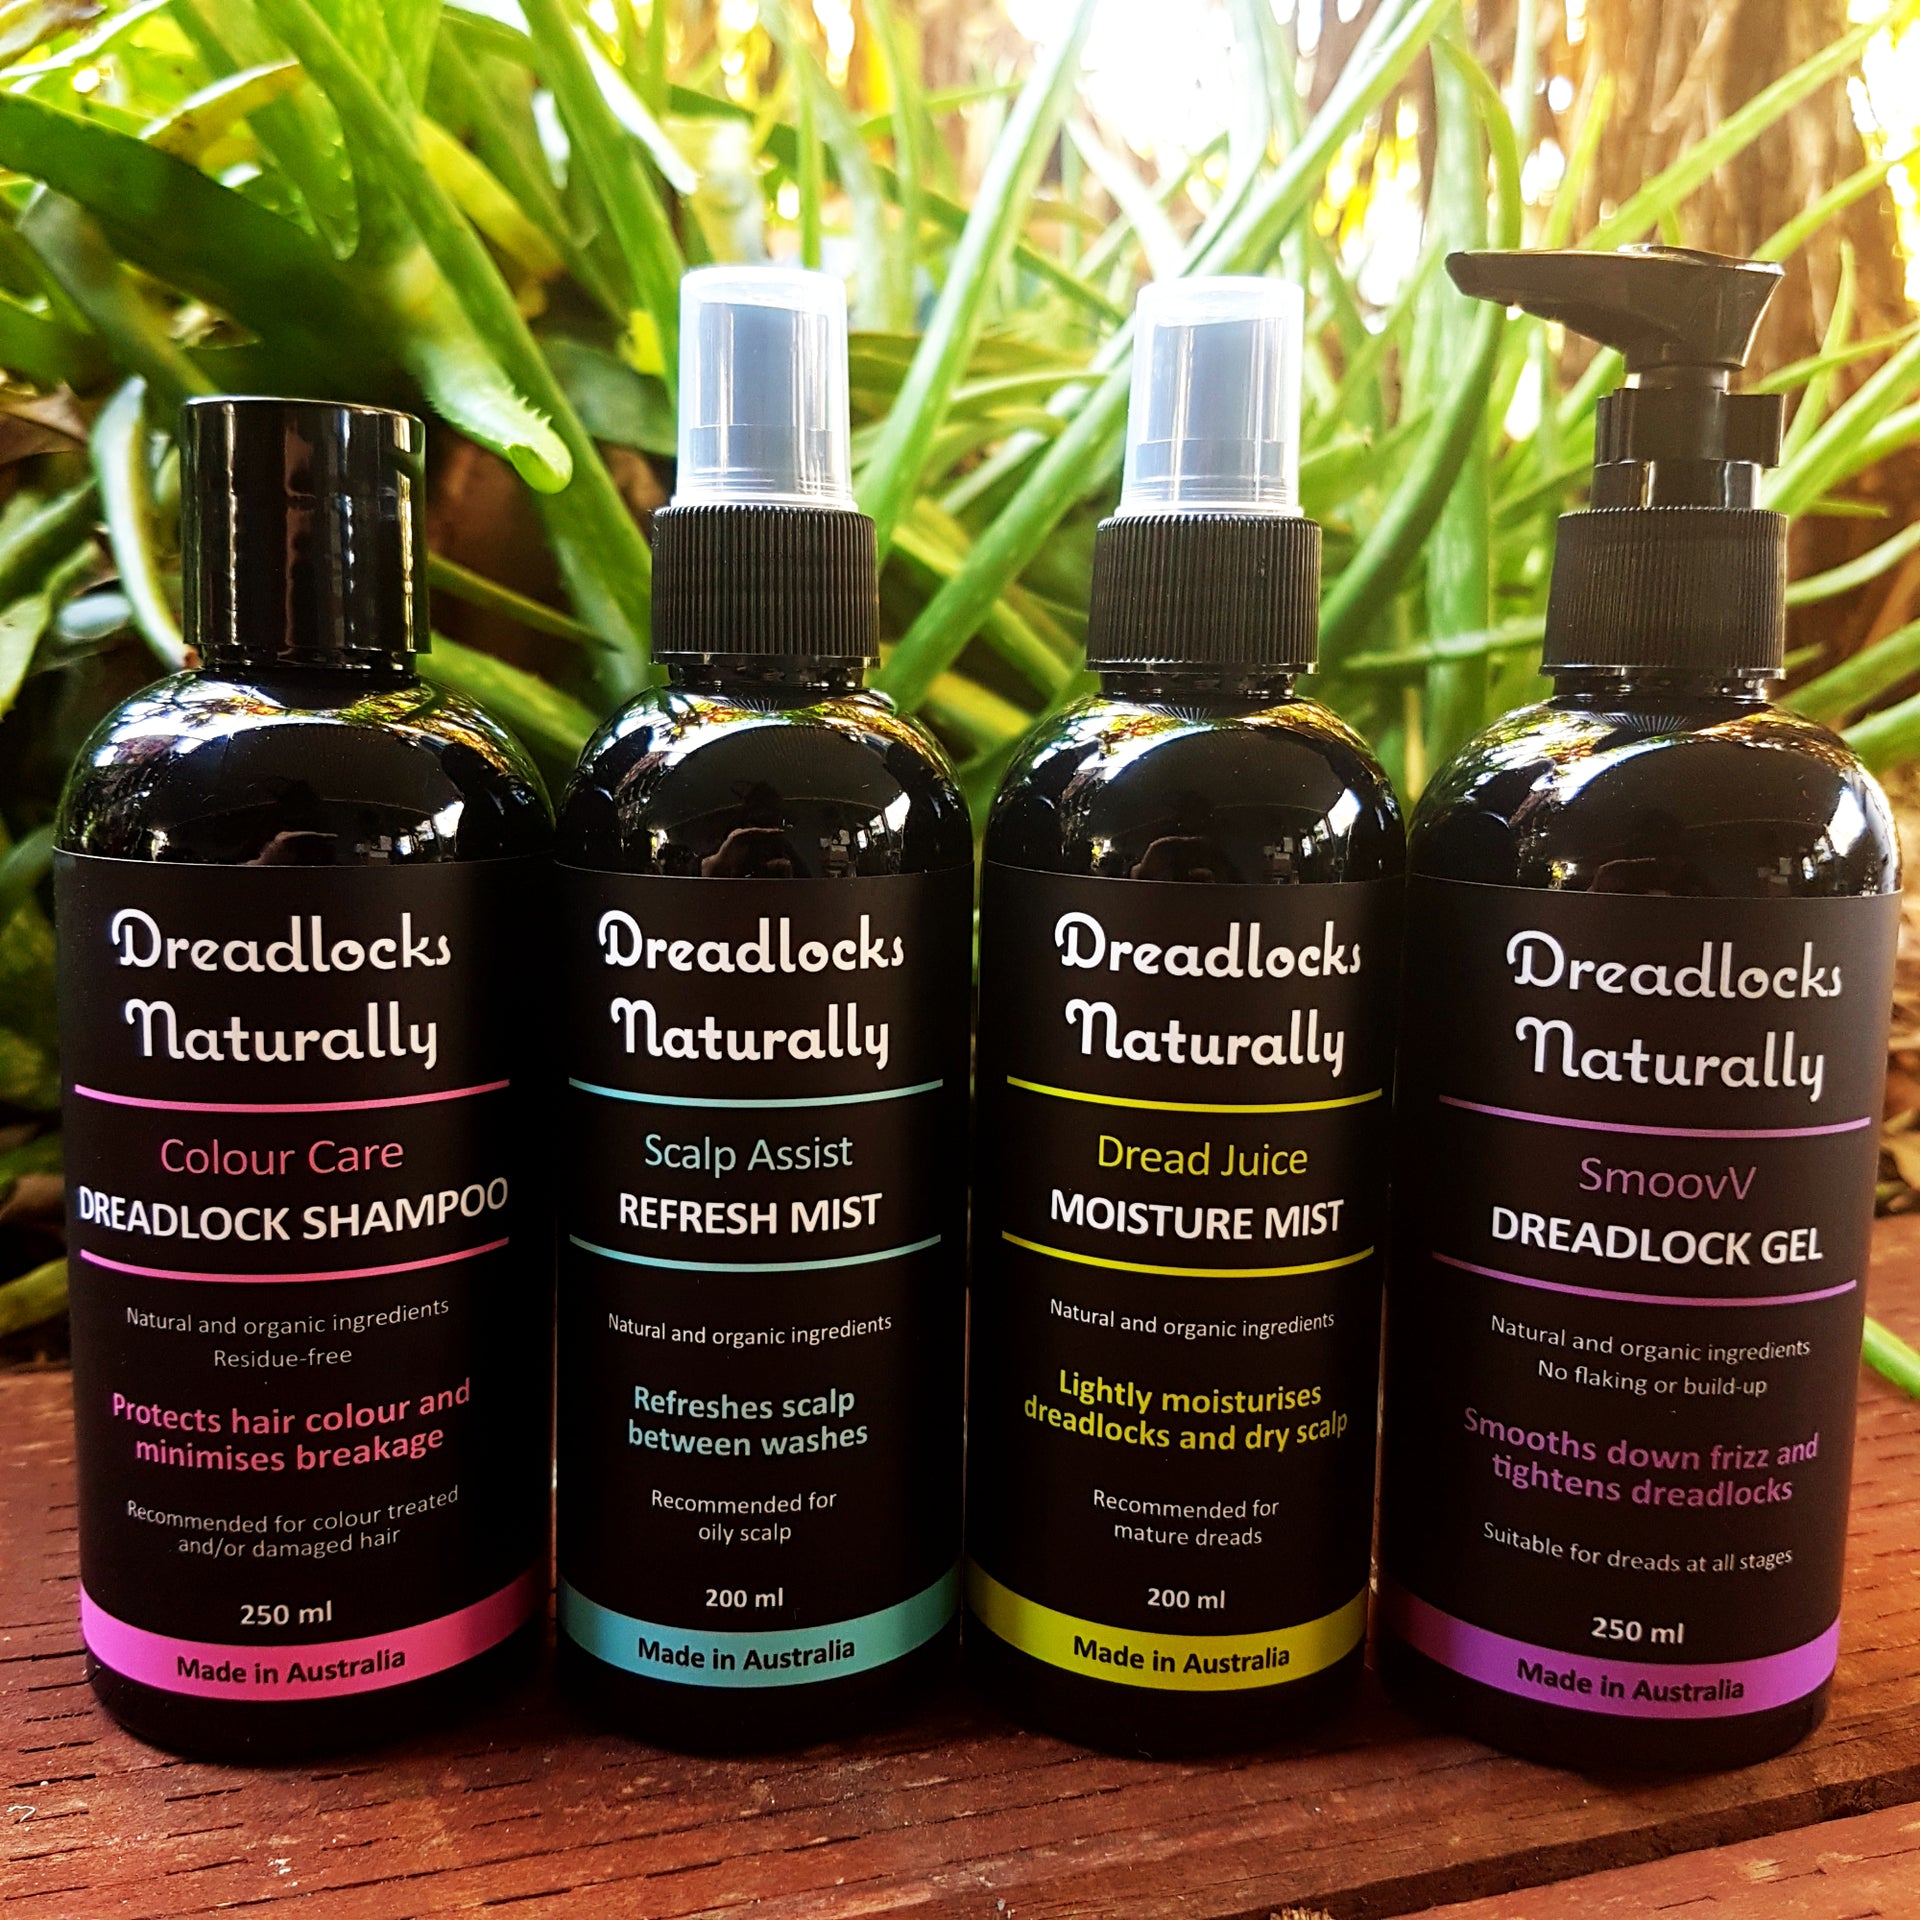 Ultimate dreadlock care_colour care dreadlock shampoo